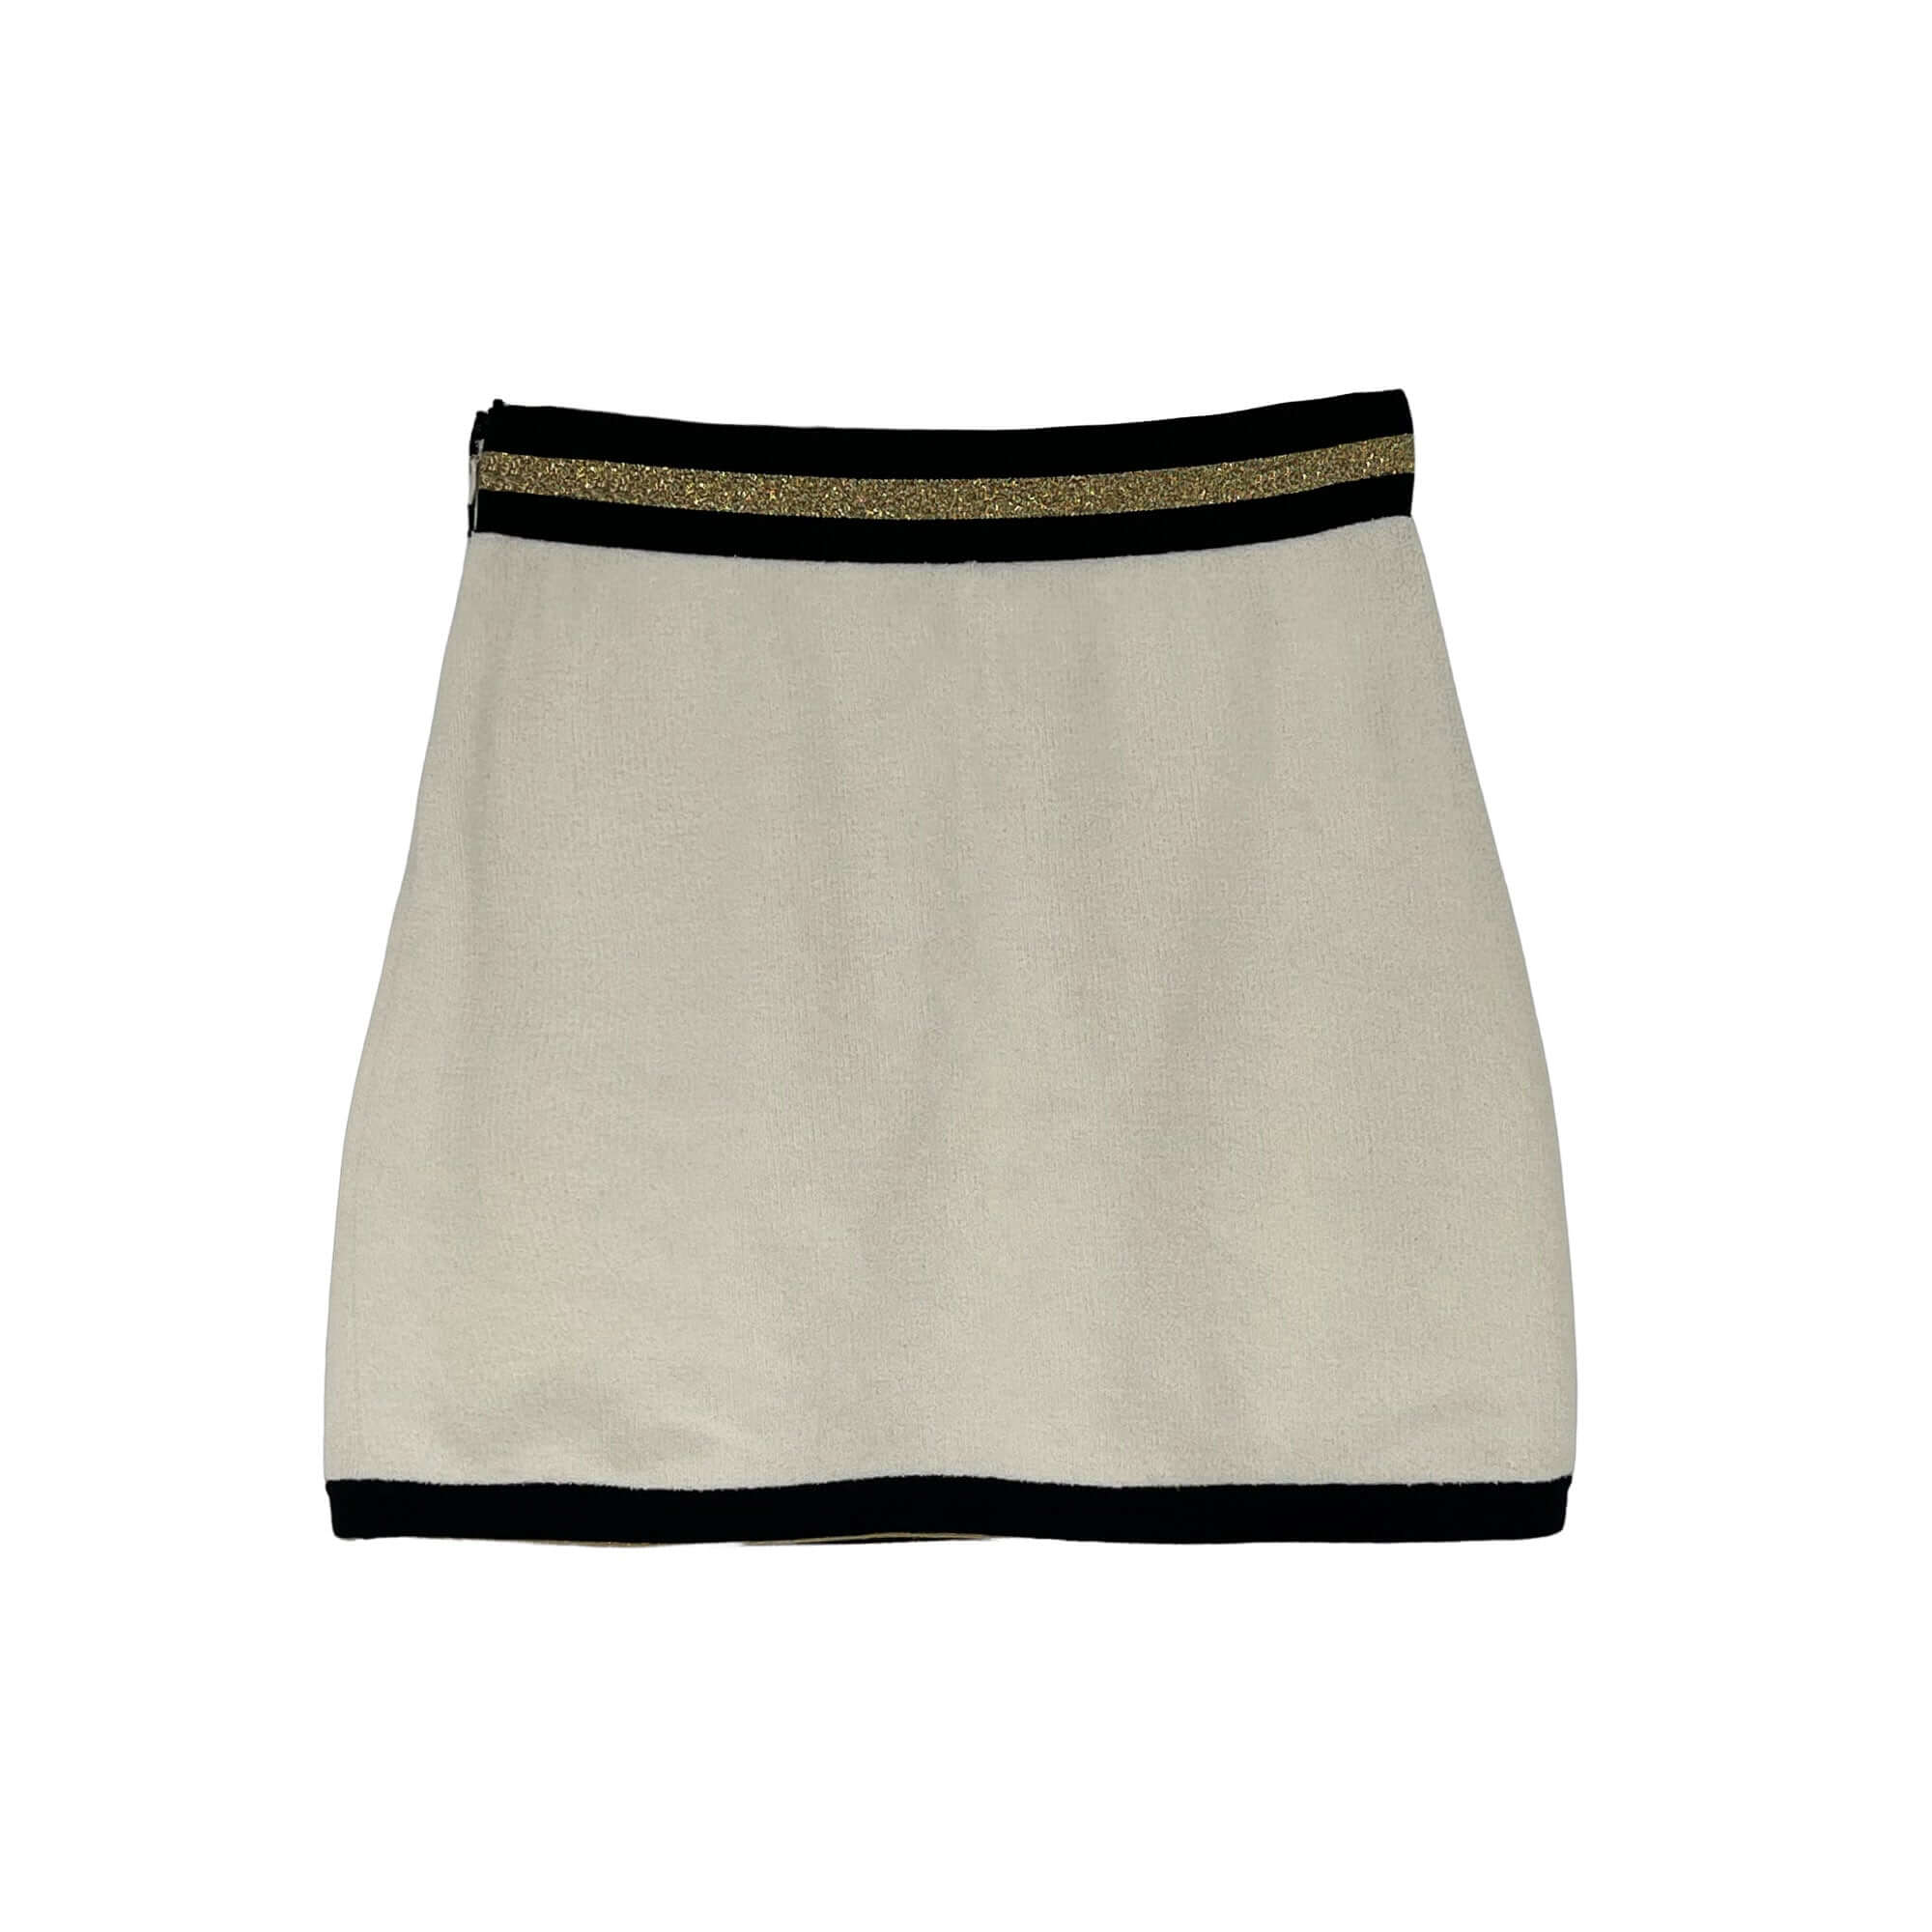 Chanel mini skirt